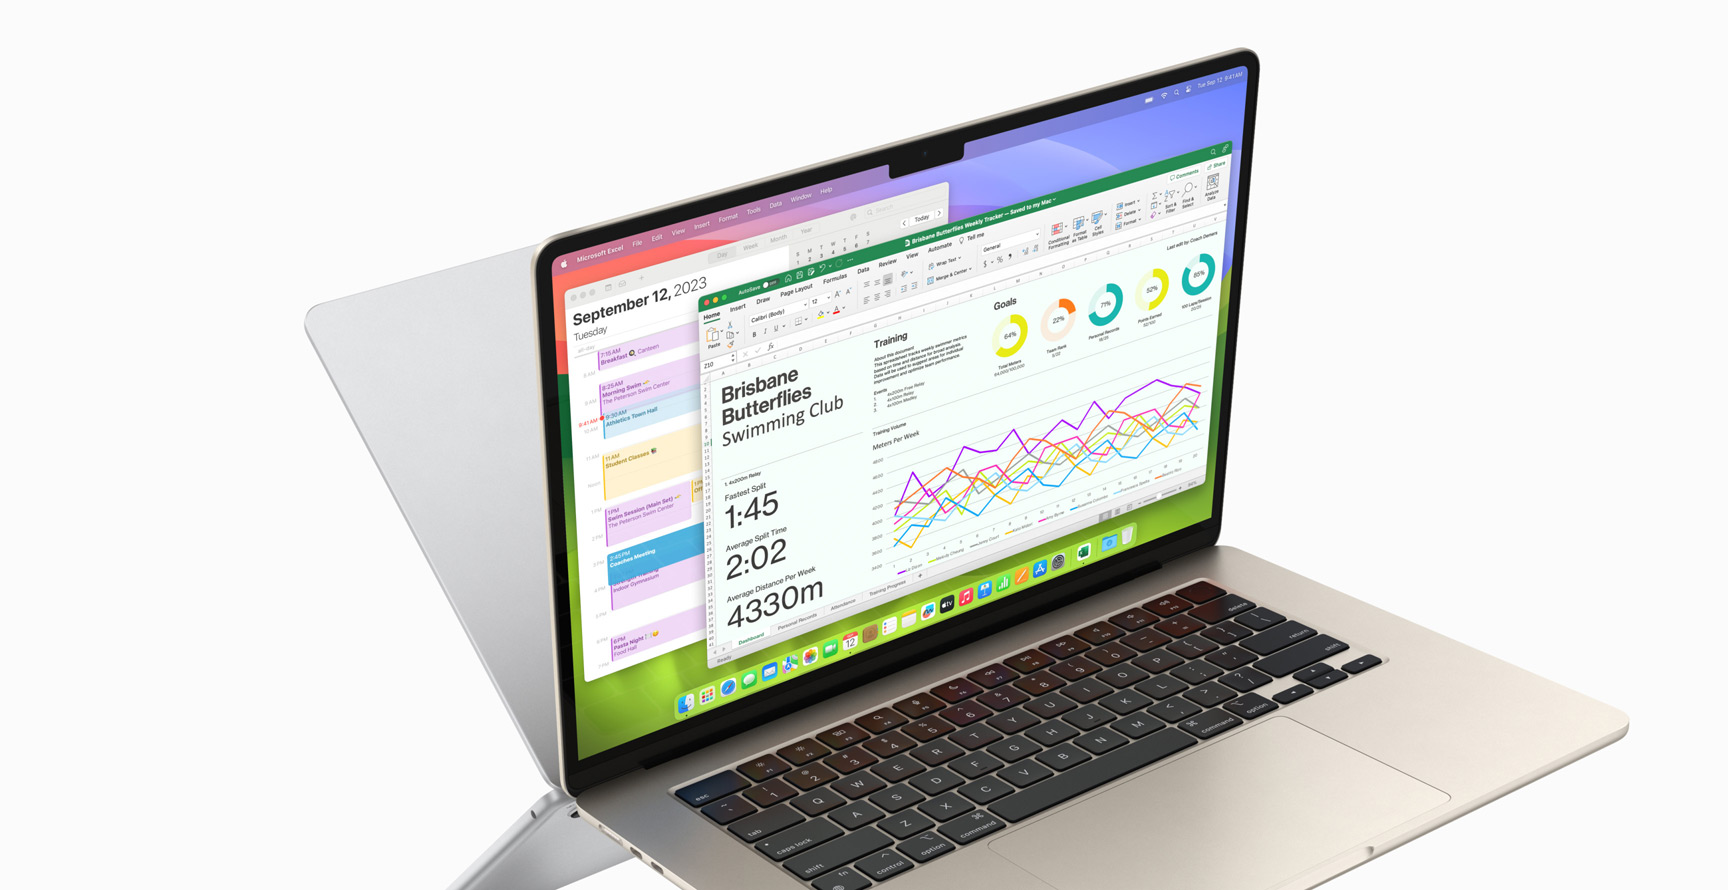 Le app Calendario e Microsoft Excel su un MacBook Air.